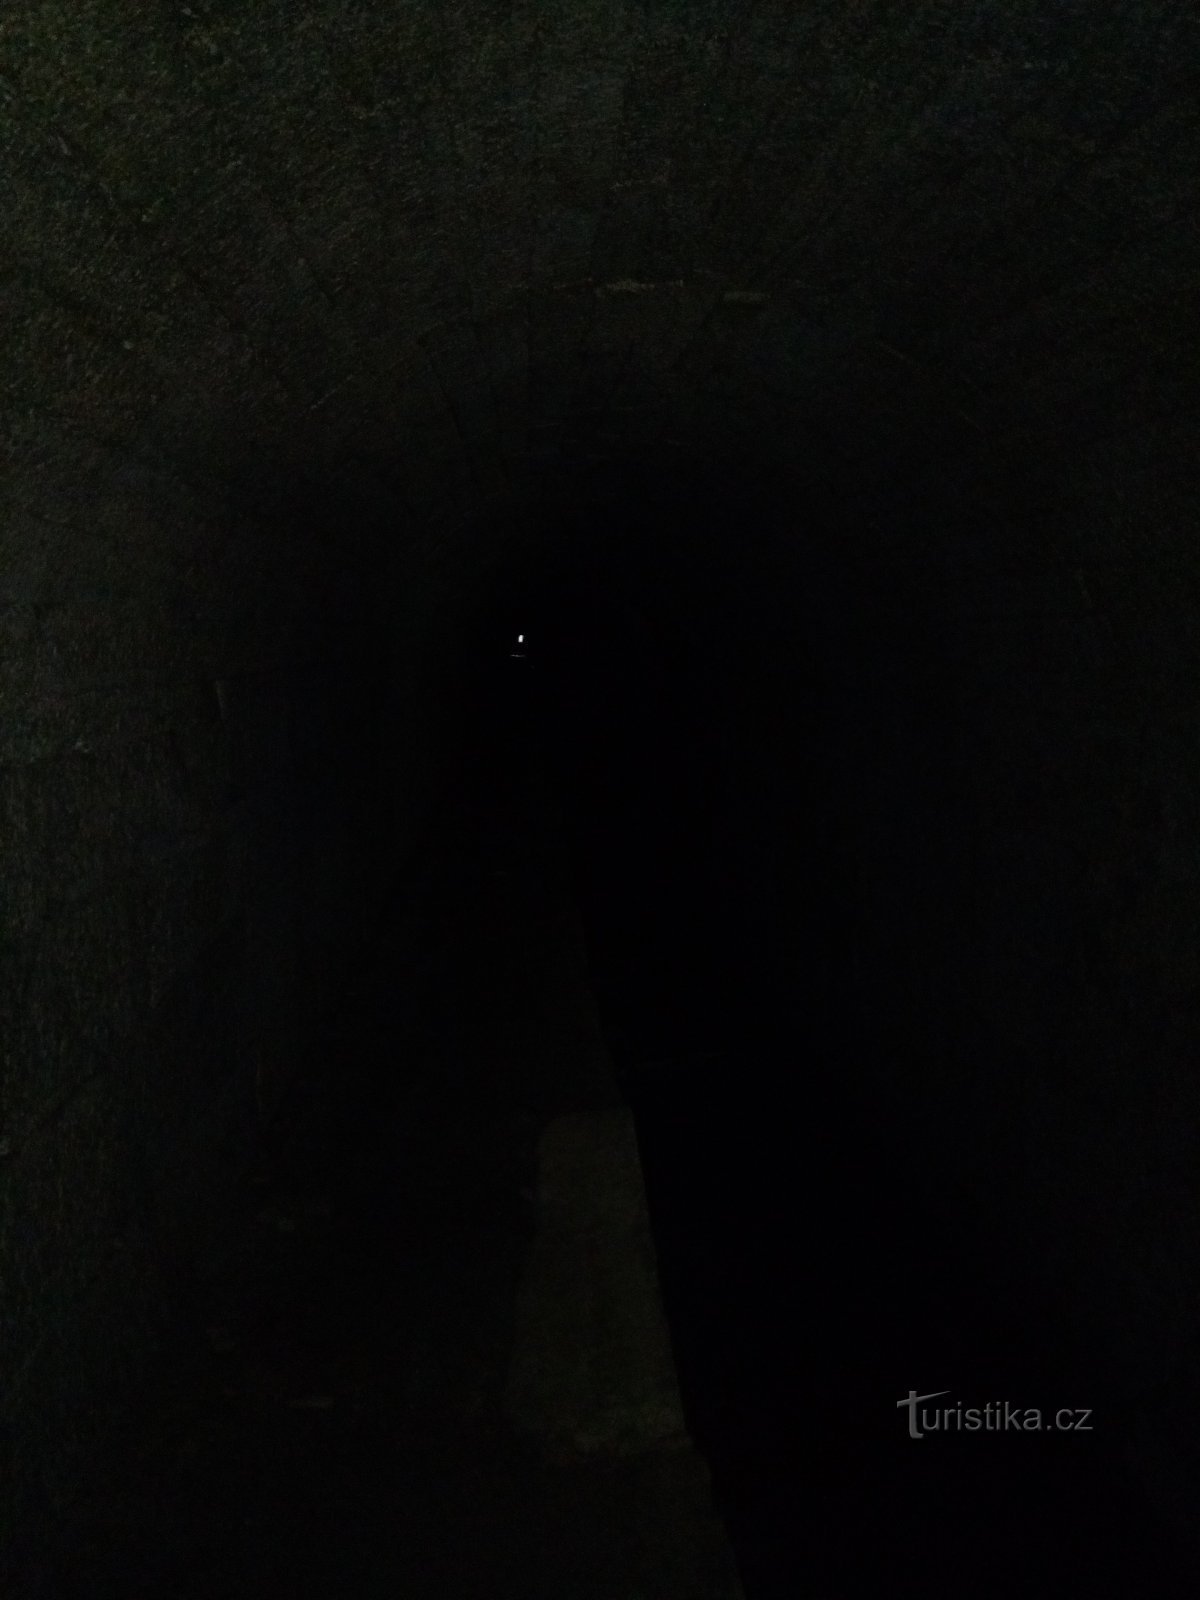 Ánh sáng ở cuối đường hầm